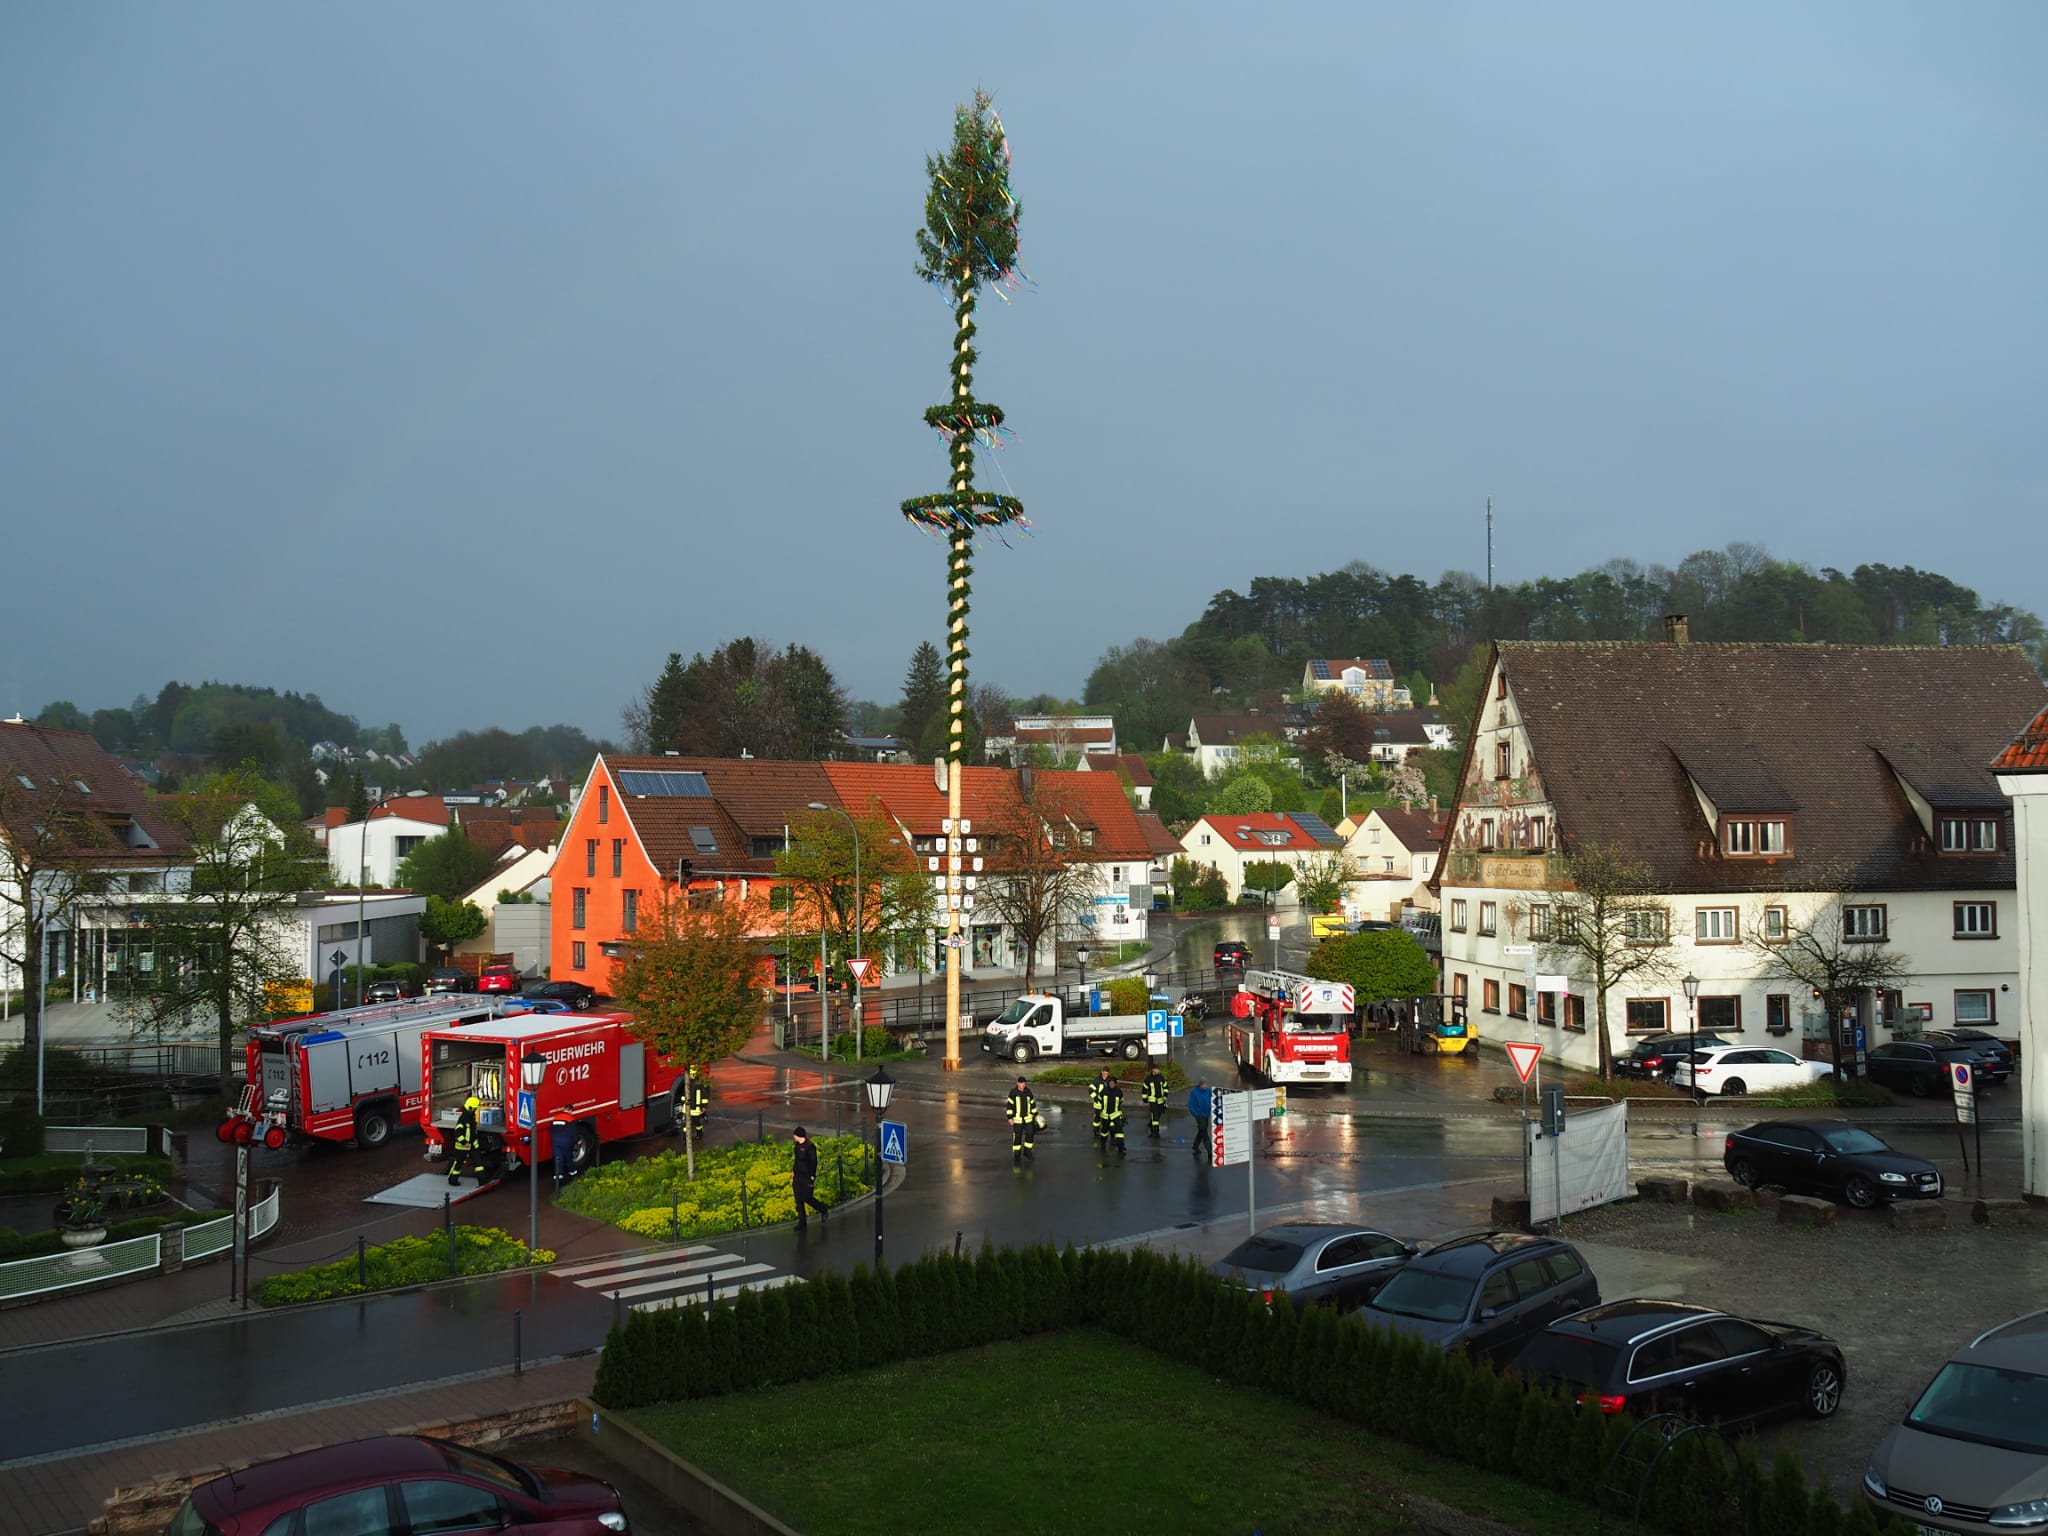  Foto: Feuerwehr Ochsenhausen 